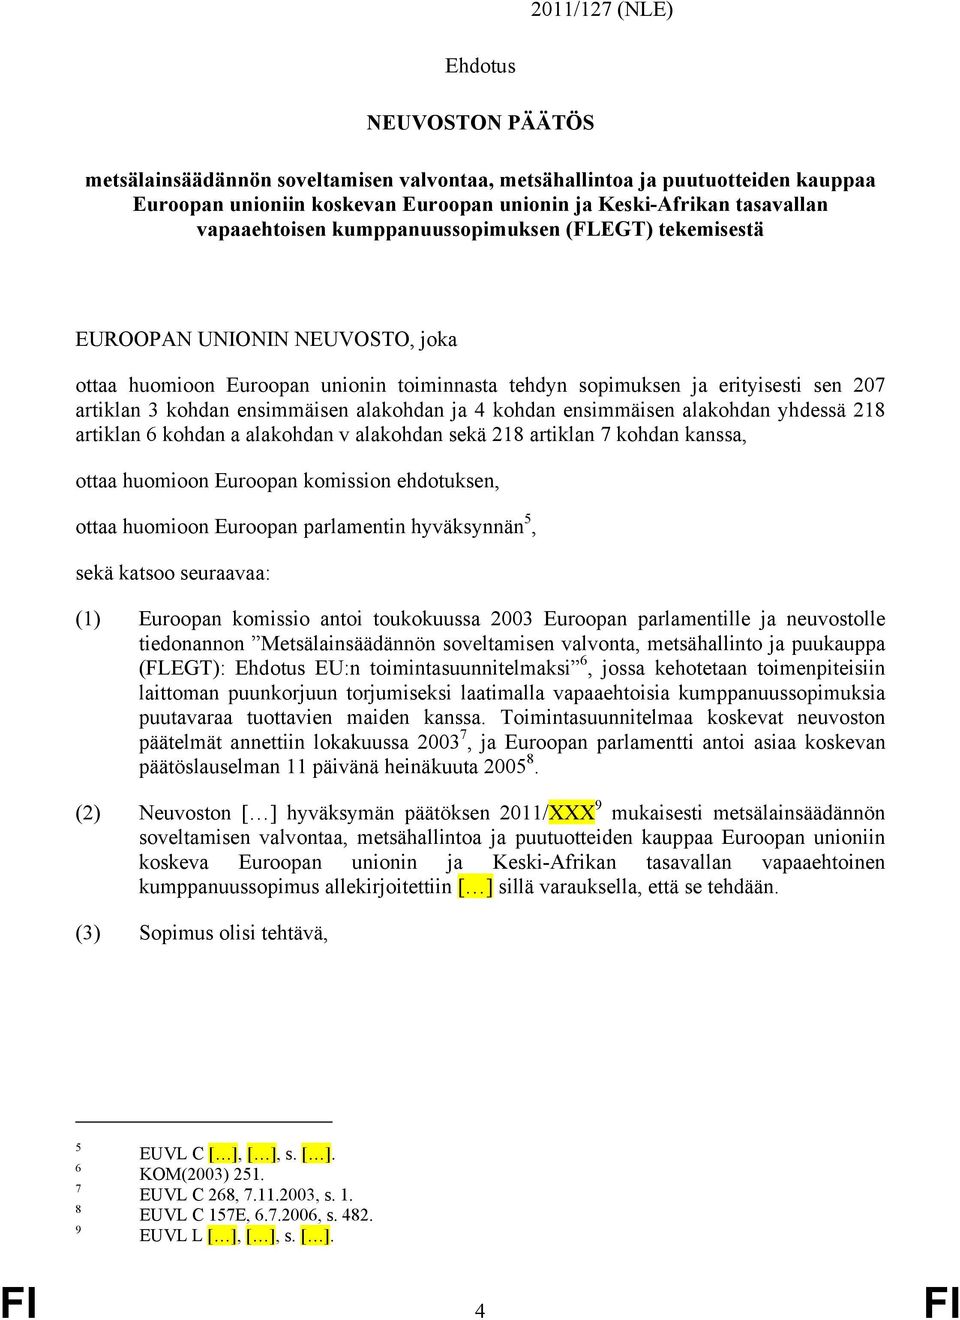 ensimmäisen alakohdan ja 4 kohdan ensimmäisen alakohdan yhdessä 218 artiklan 6 kohdan a alakohdan v alakohdan sekä 218 artiklan 7 kohdan kanssa, ottaa huomioon Euroopan komission ehdotuksen, ottaa